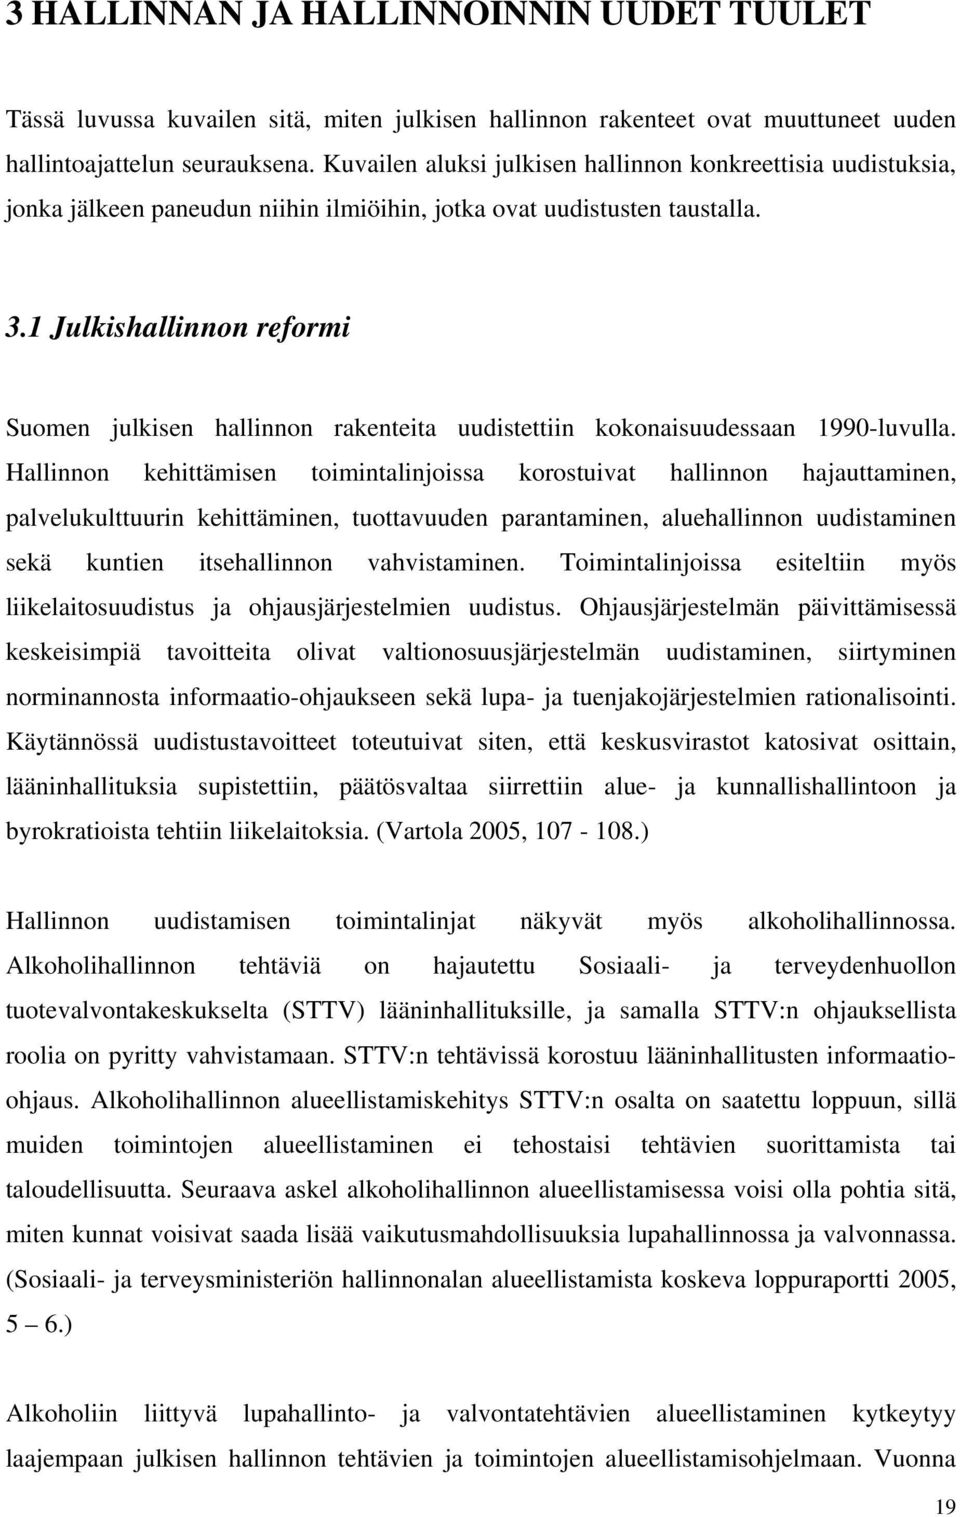 1 Julkishallinnon reformi Suomen julkisen hallinnon rakenteita uudistettiin kokonaisuudessaan 1990-luvulla.